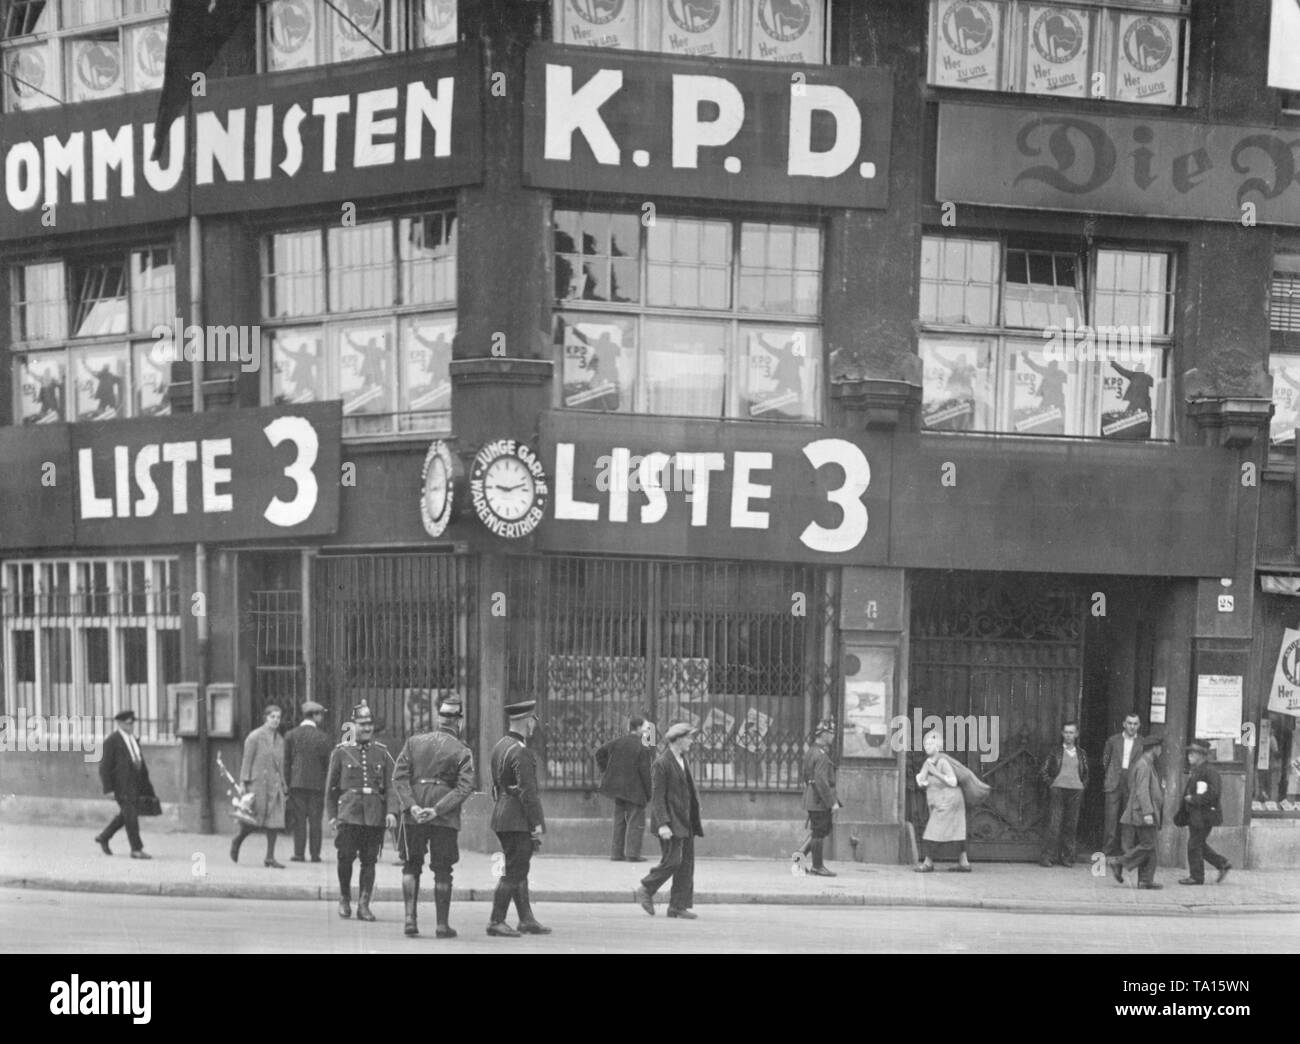 Nel 1932, Karl Liebknecht House all'Buelowplatz a Berlino, il quartier generale del Partito comunista e il giornale del partito "Die Rote Fahne' ('La bandiera rossa"), è stato temporaneamente chiuso dopo intense battaglie di strada tra poliziotti e manifestanti comunista. Tuttavia, la chiamata a votare la lista comunista 3 è ancora intatto sulla facciata della casa. Foto Stock